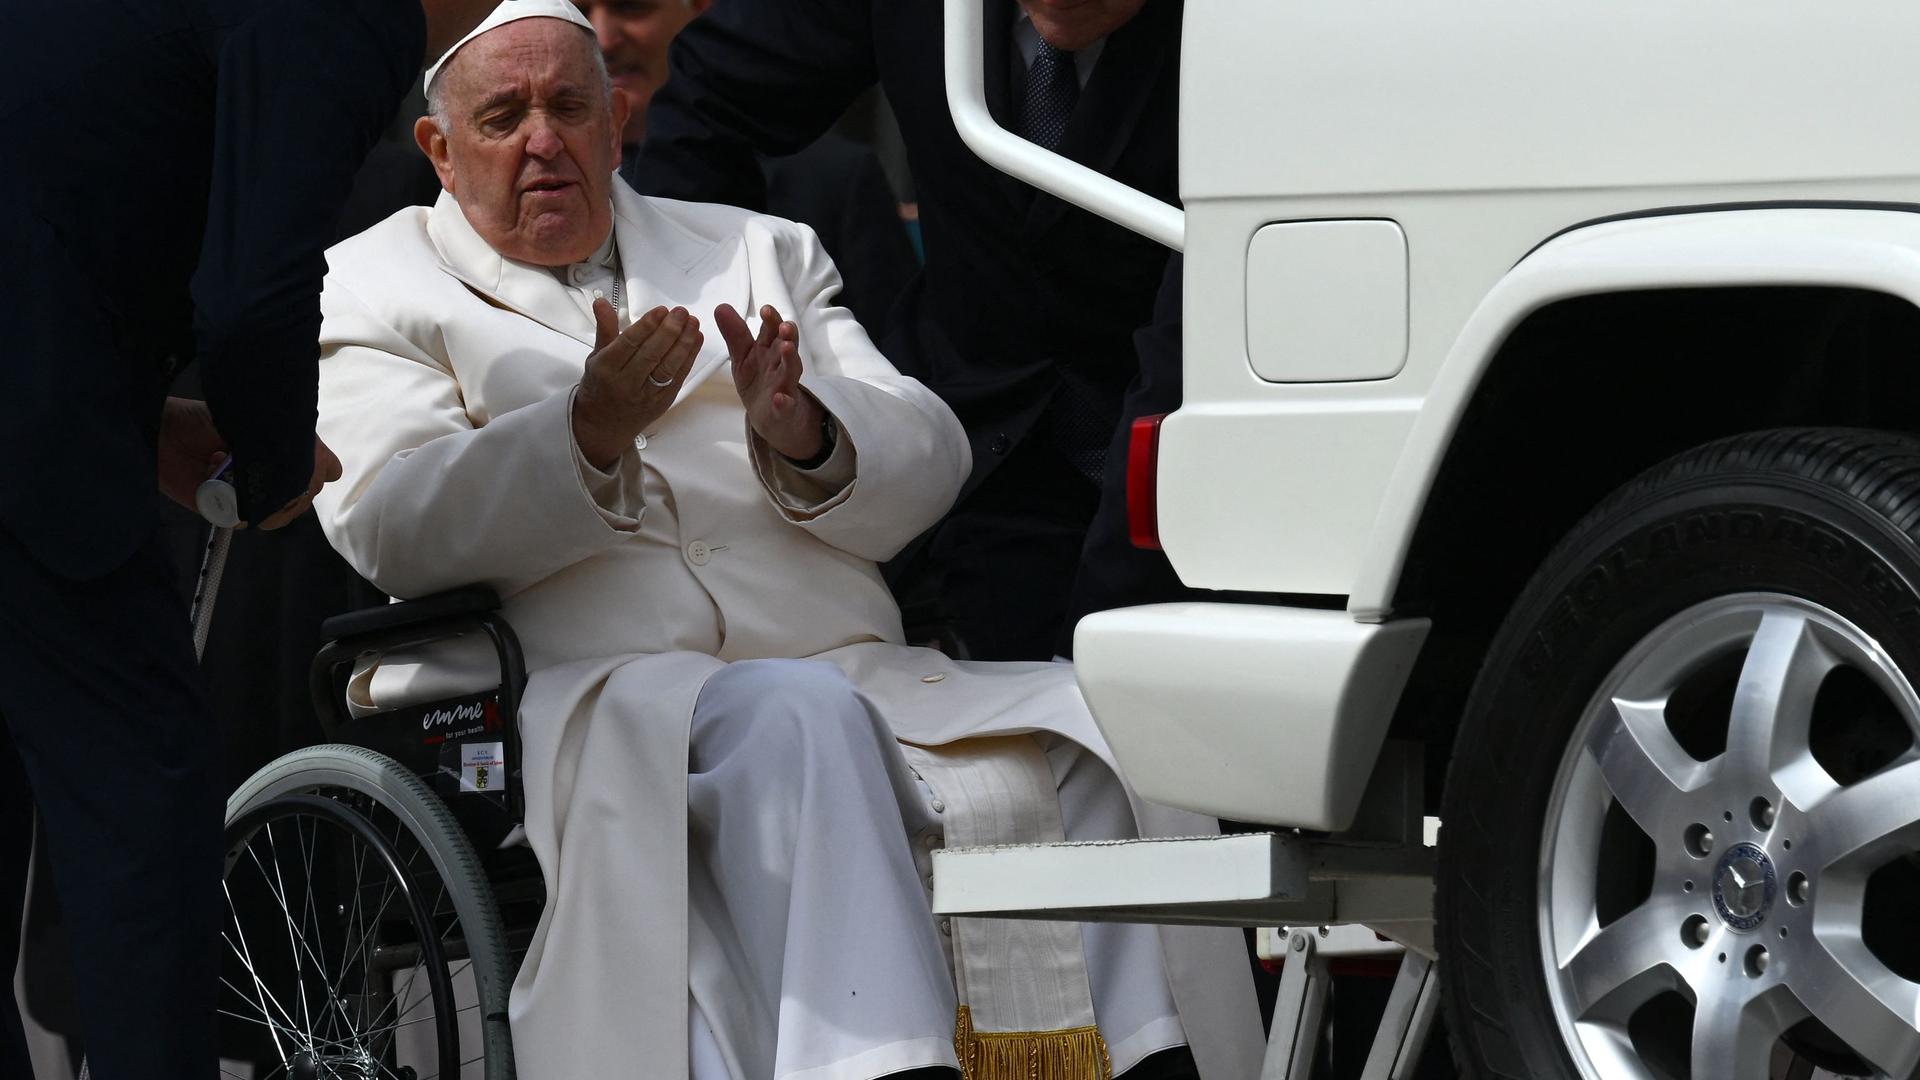 Affaibli, le pape François se déplace en fauteuil roulant depuis l'année dernière.